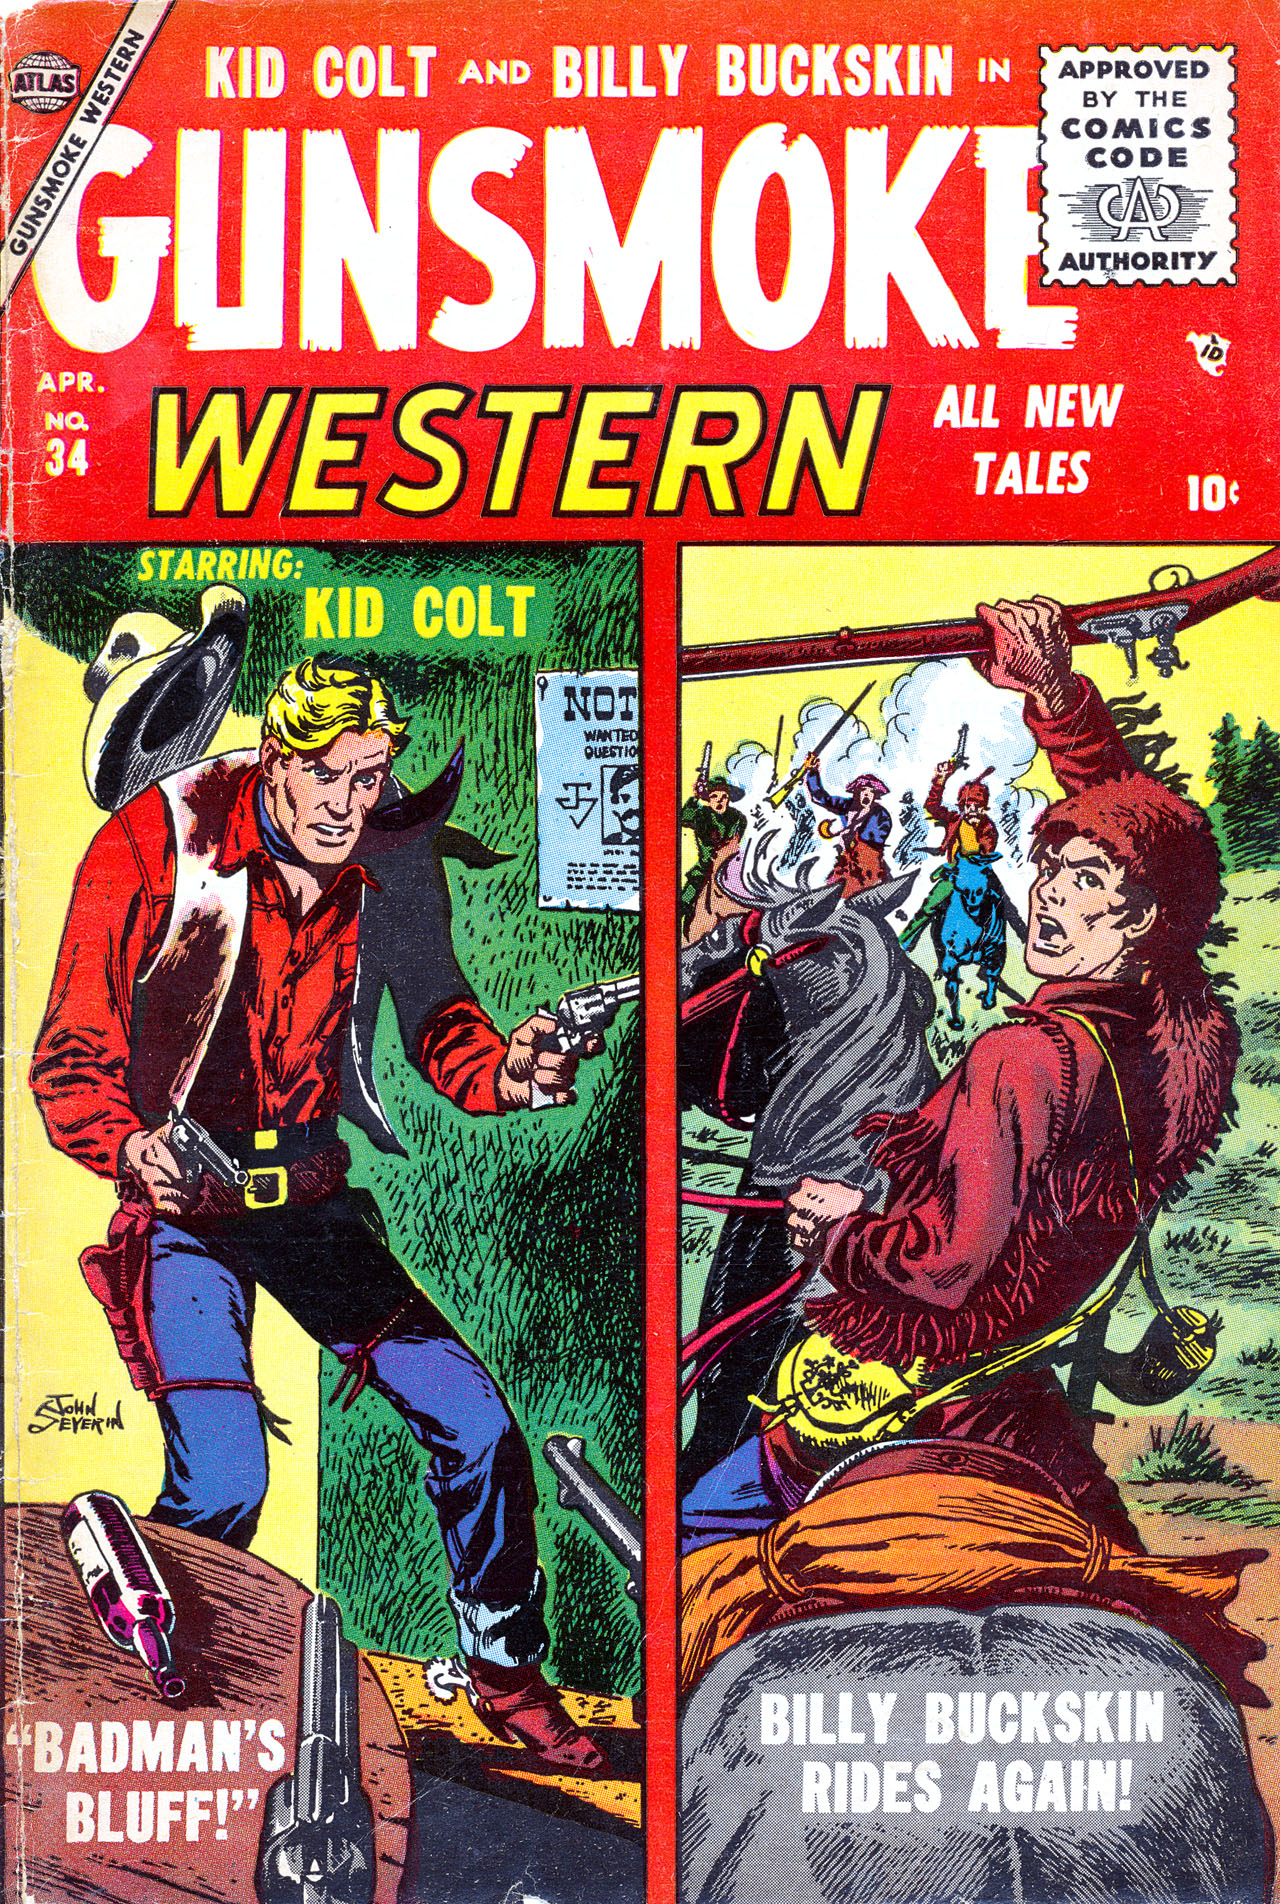 Read online Gunsmoke Western comic -  Issue #34 - 1